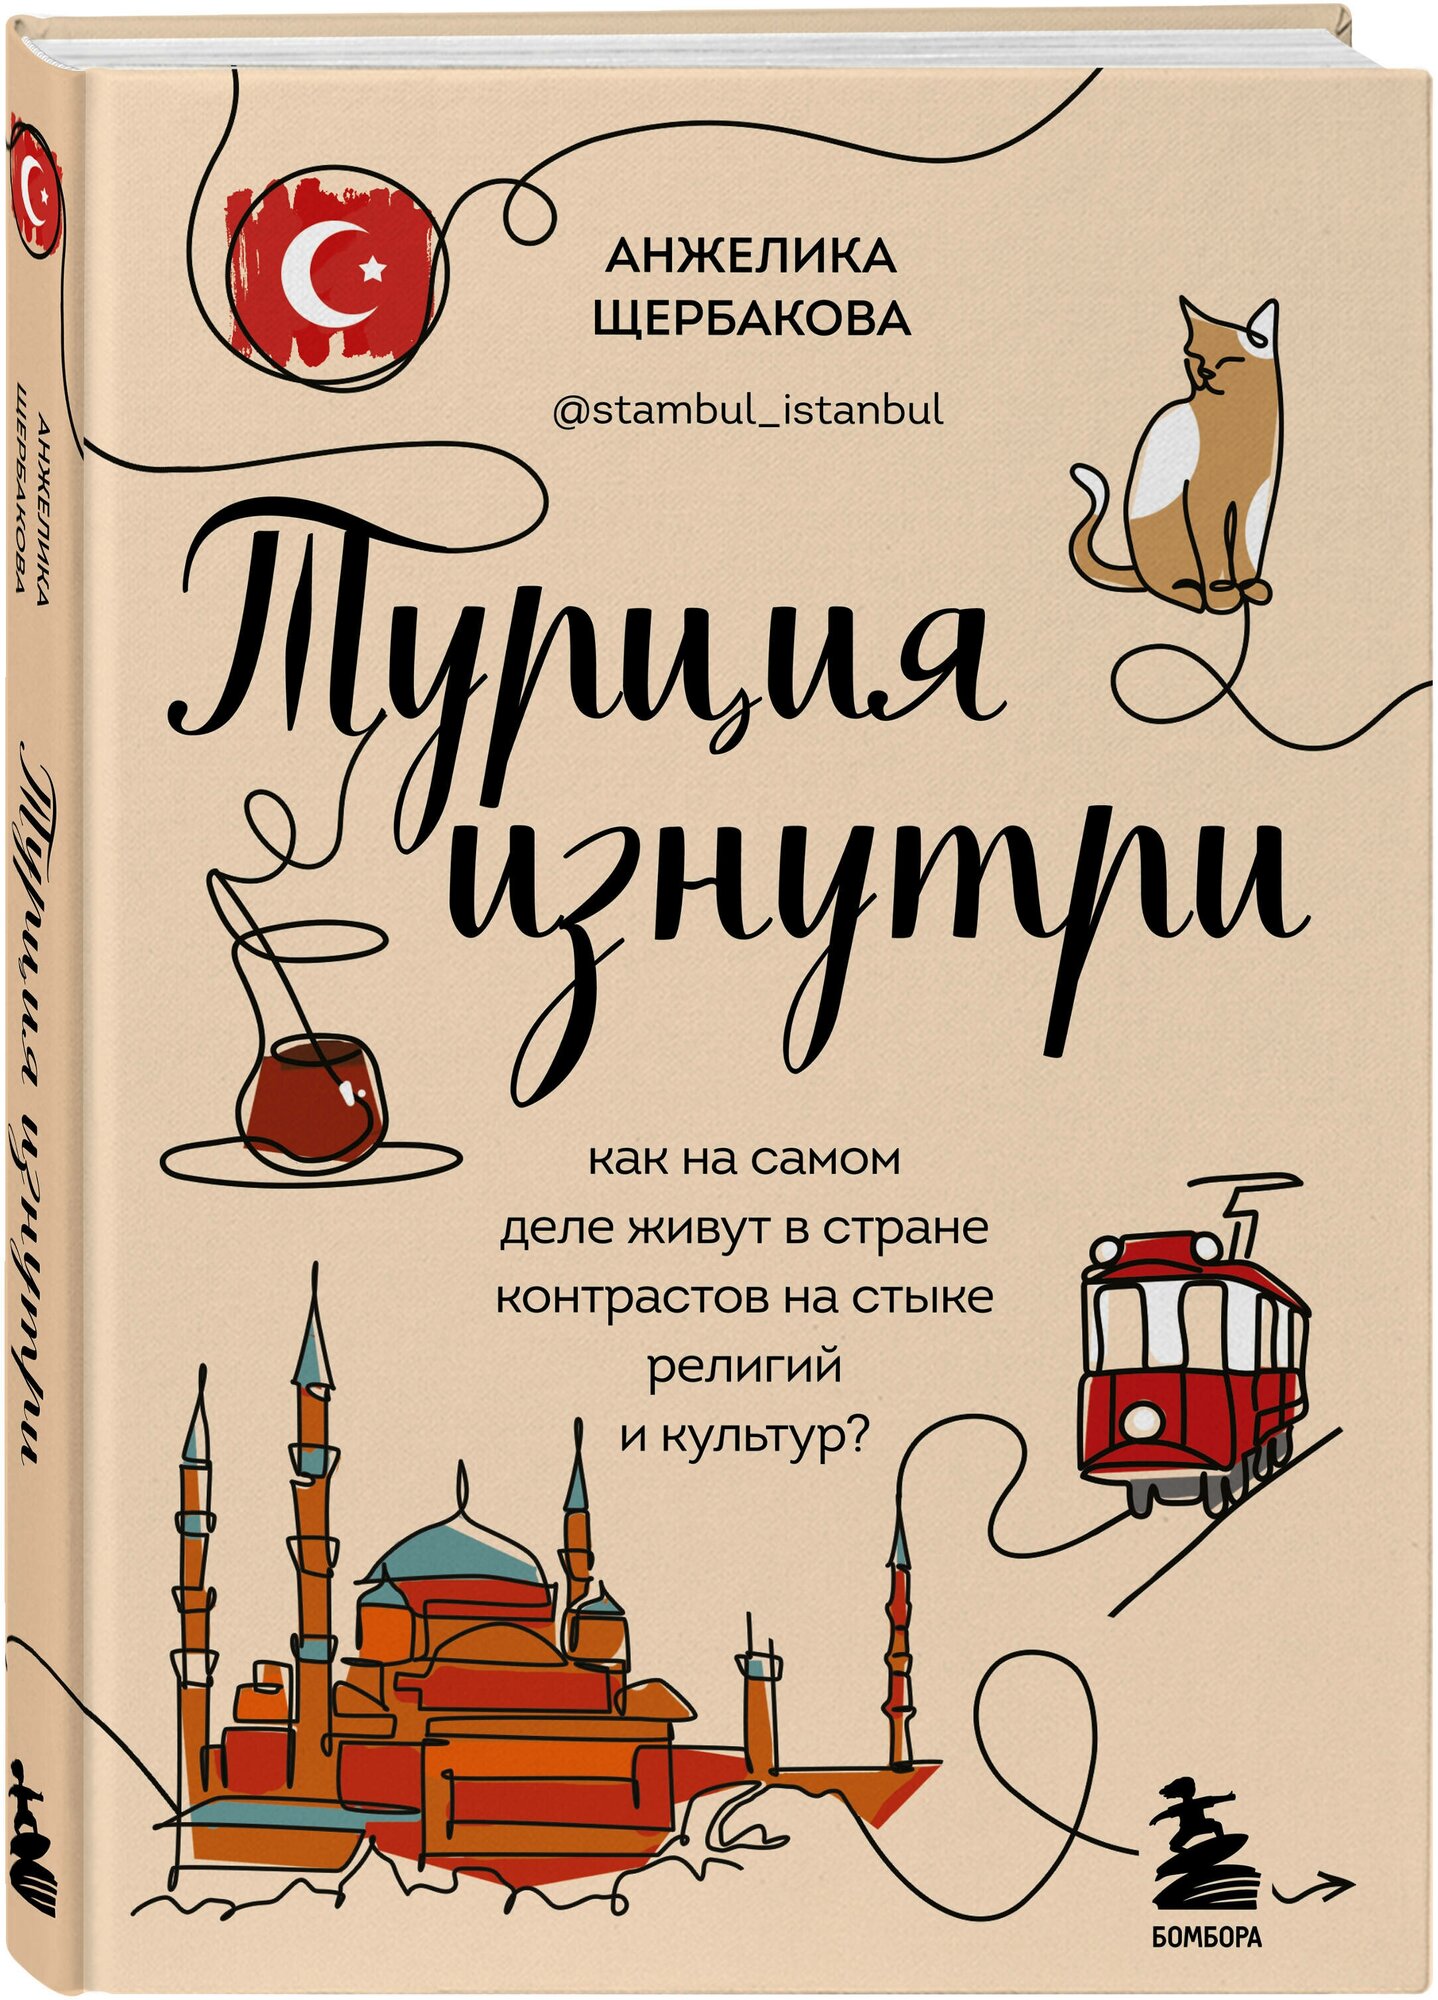 Щербакова А. Н. Турция изнутри. Как на самом деле живут в стране контрастов на стыке религий и культур? (дополненное издание)